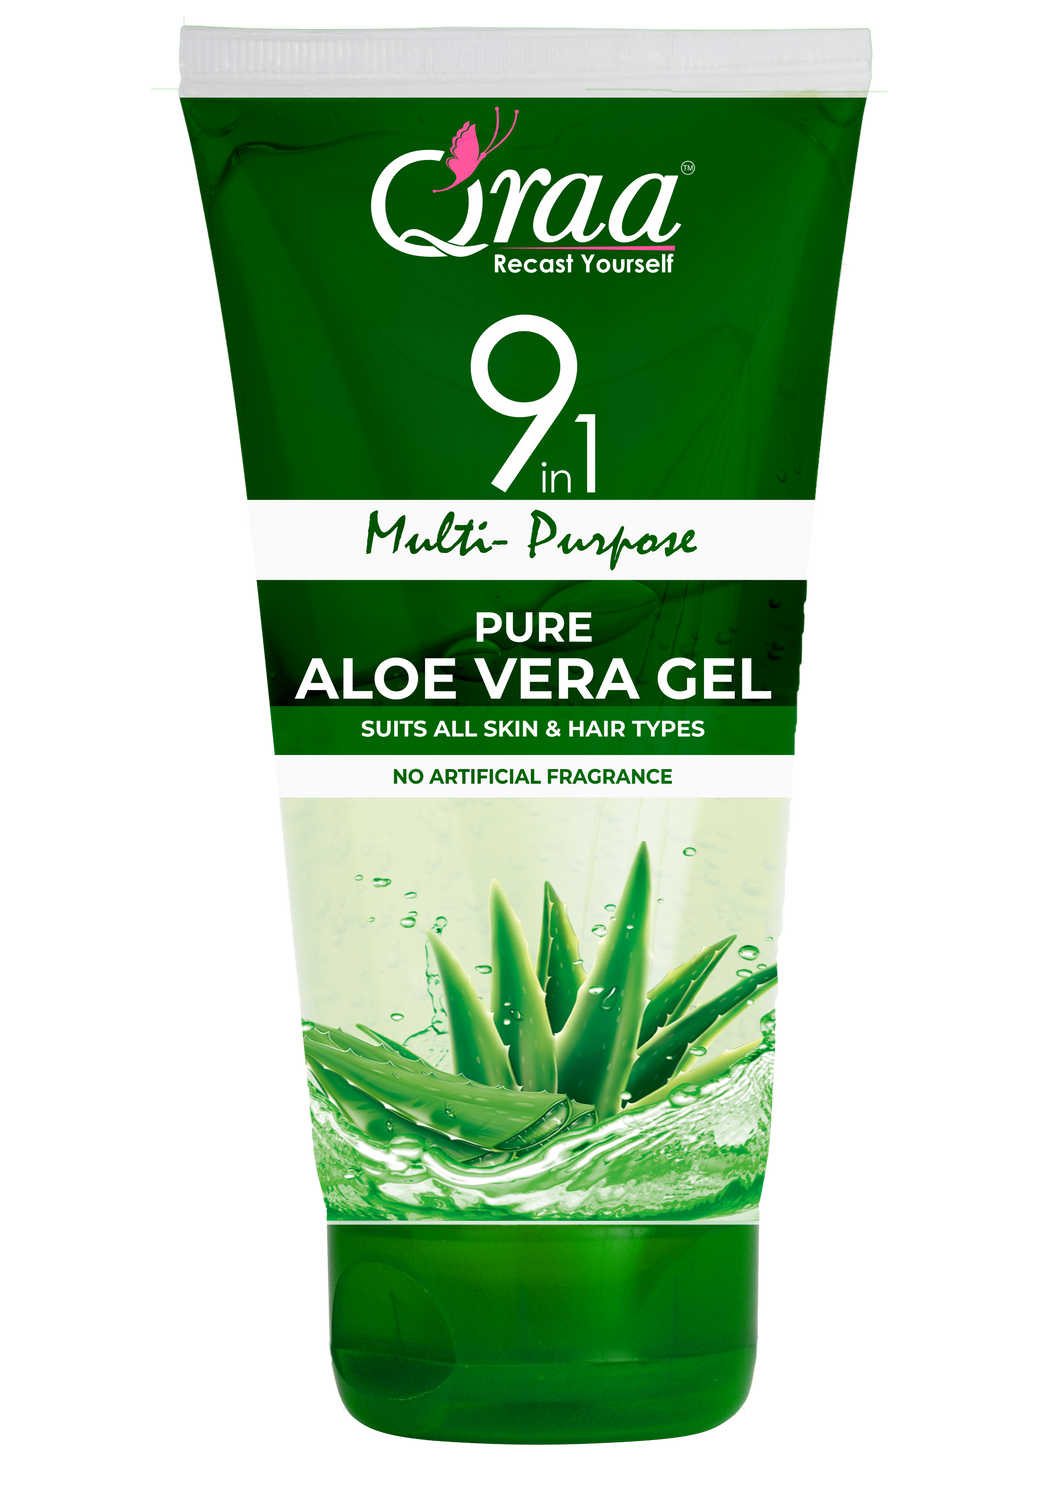 Qraa Aloe Vera Gel -9 in 1 Multipurpose Gel for Hair & Skin  (100 ml)